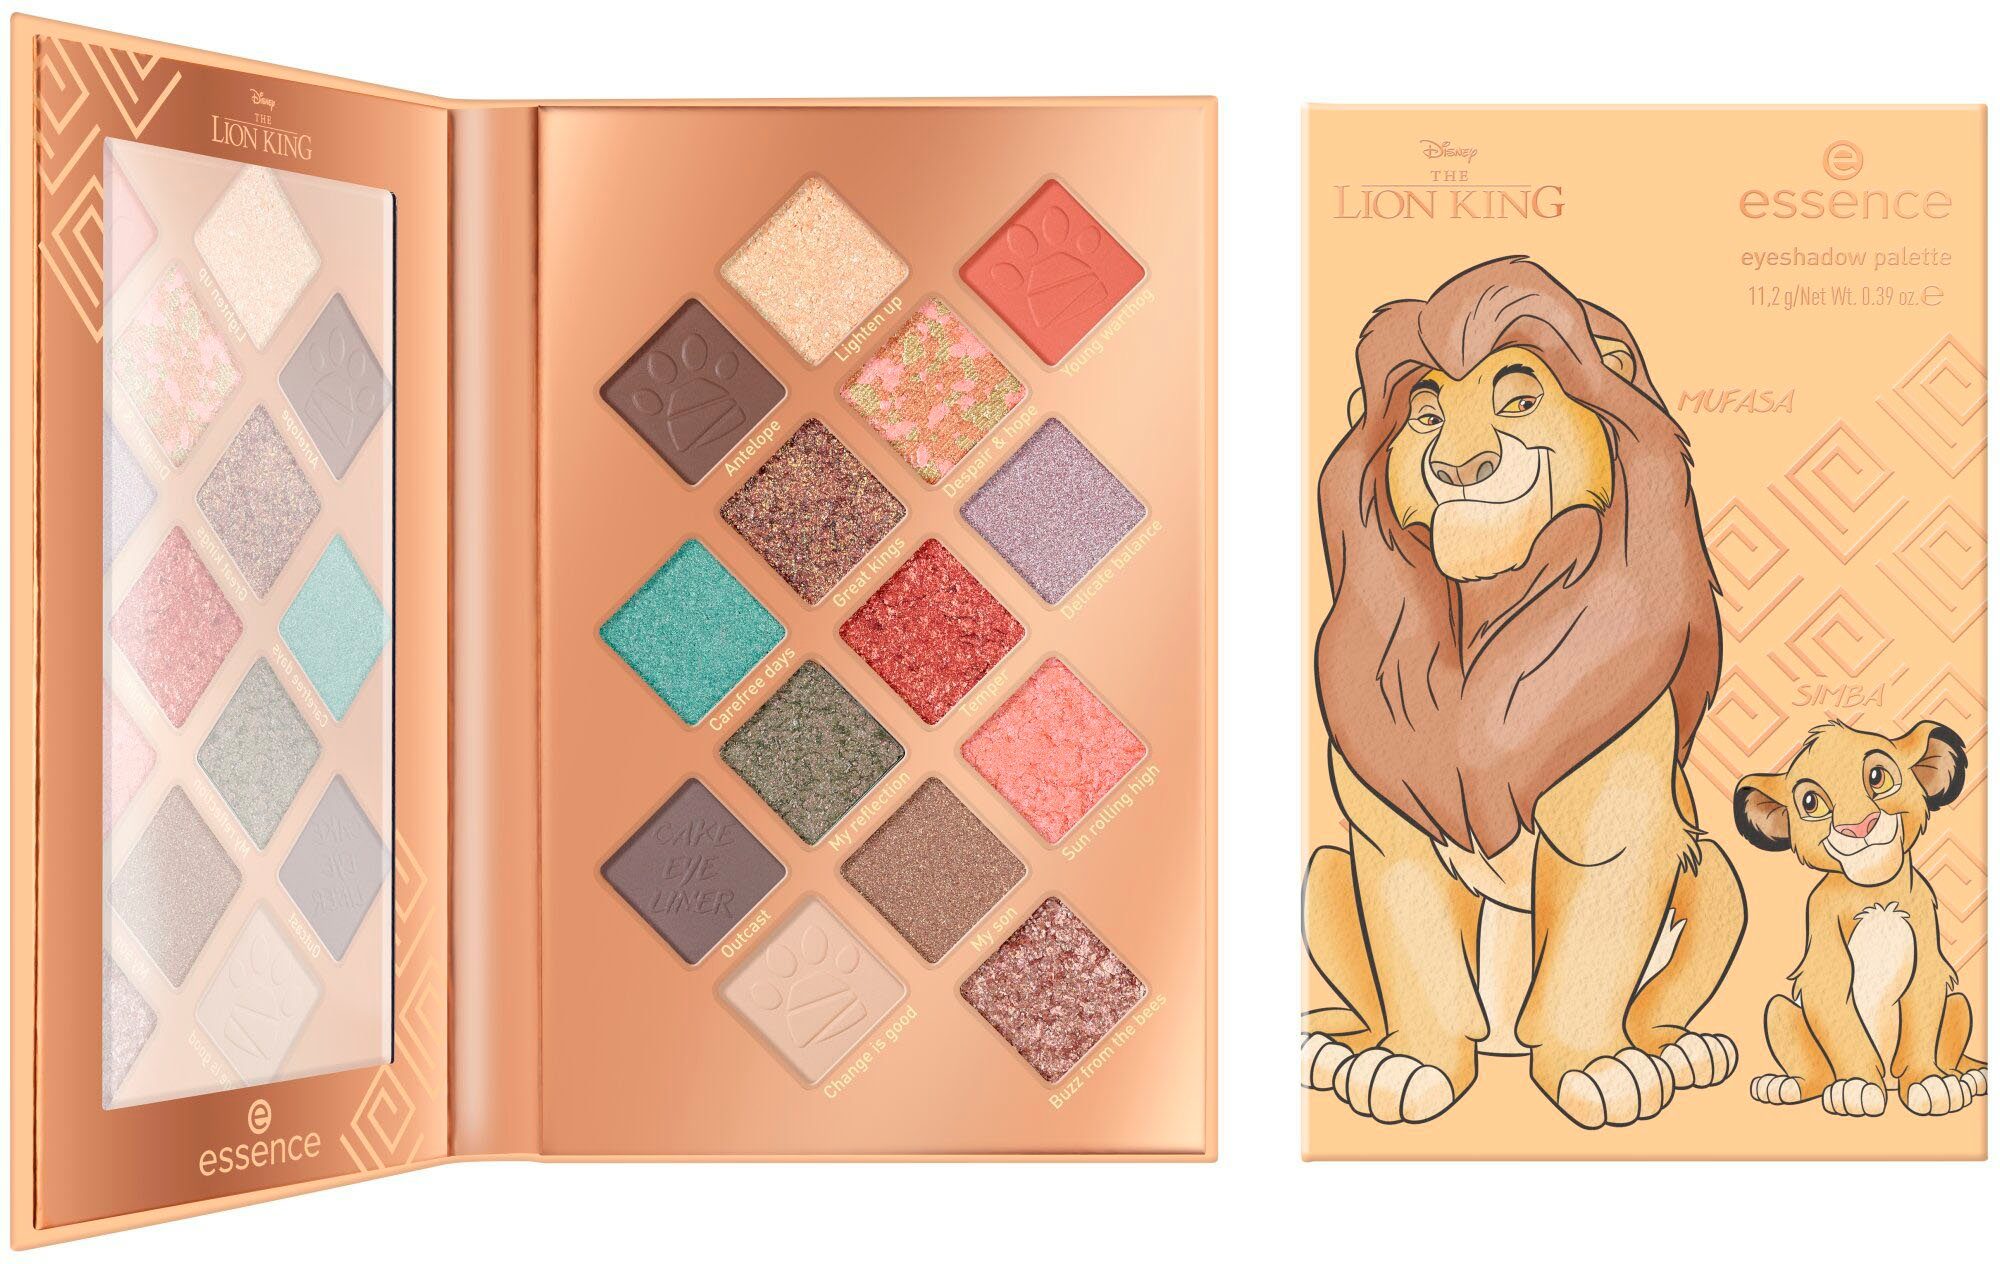 Essence Lidschatten-Palette Disney The Lion King eyeshadow palette,  Finishes in seidenmatten & metallischen Farbtönen | Lidschatten